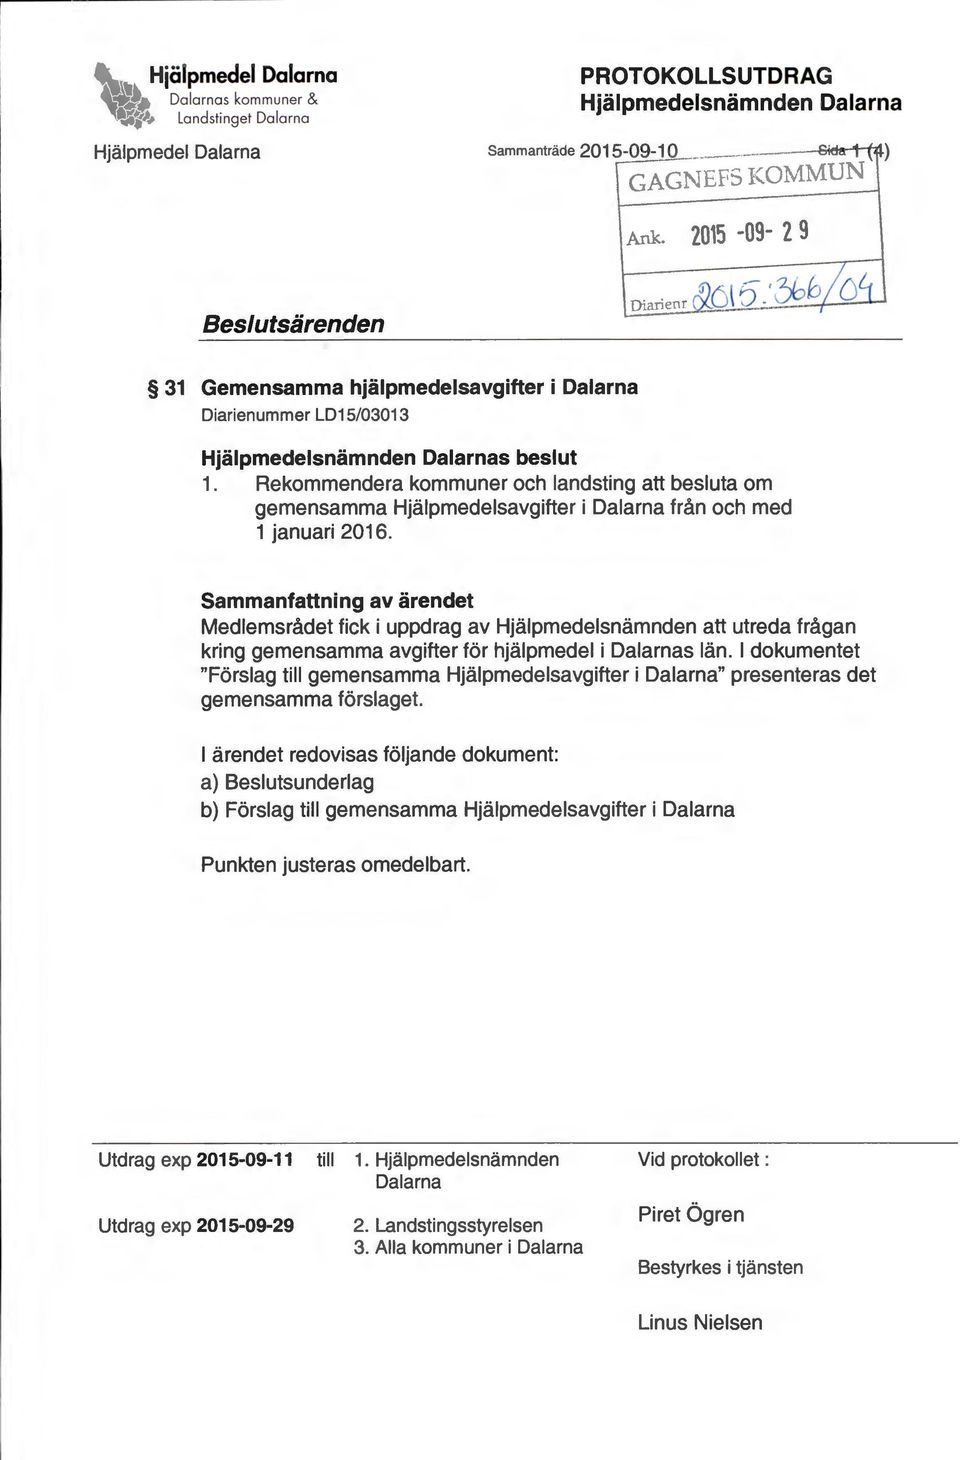 Rekommendera kommuner och landsting att besluta om gemensamma Hjälpmedelsavgifter i Dalarna från och med 1 januari 2016.